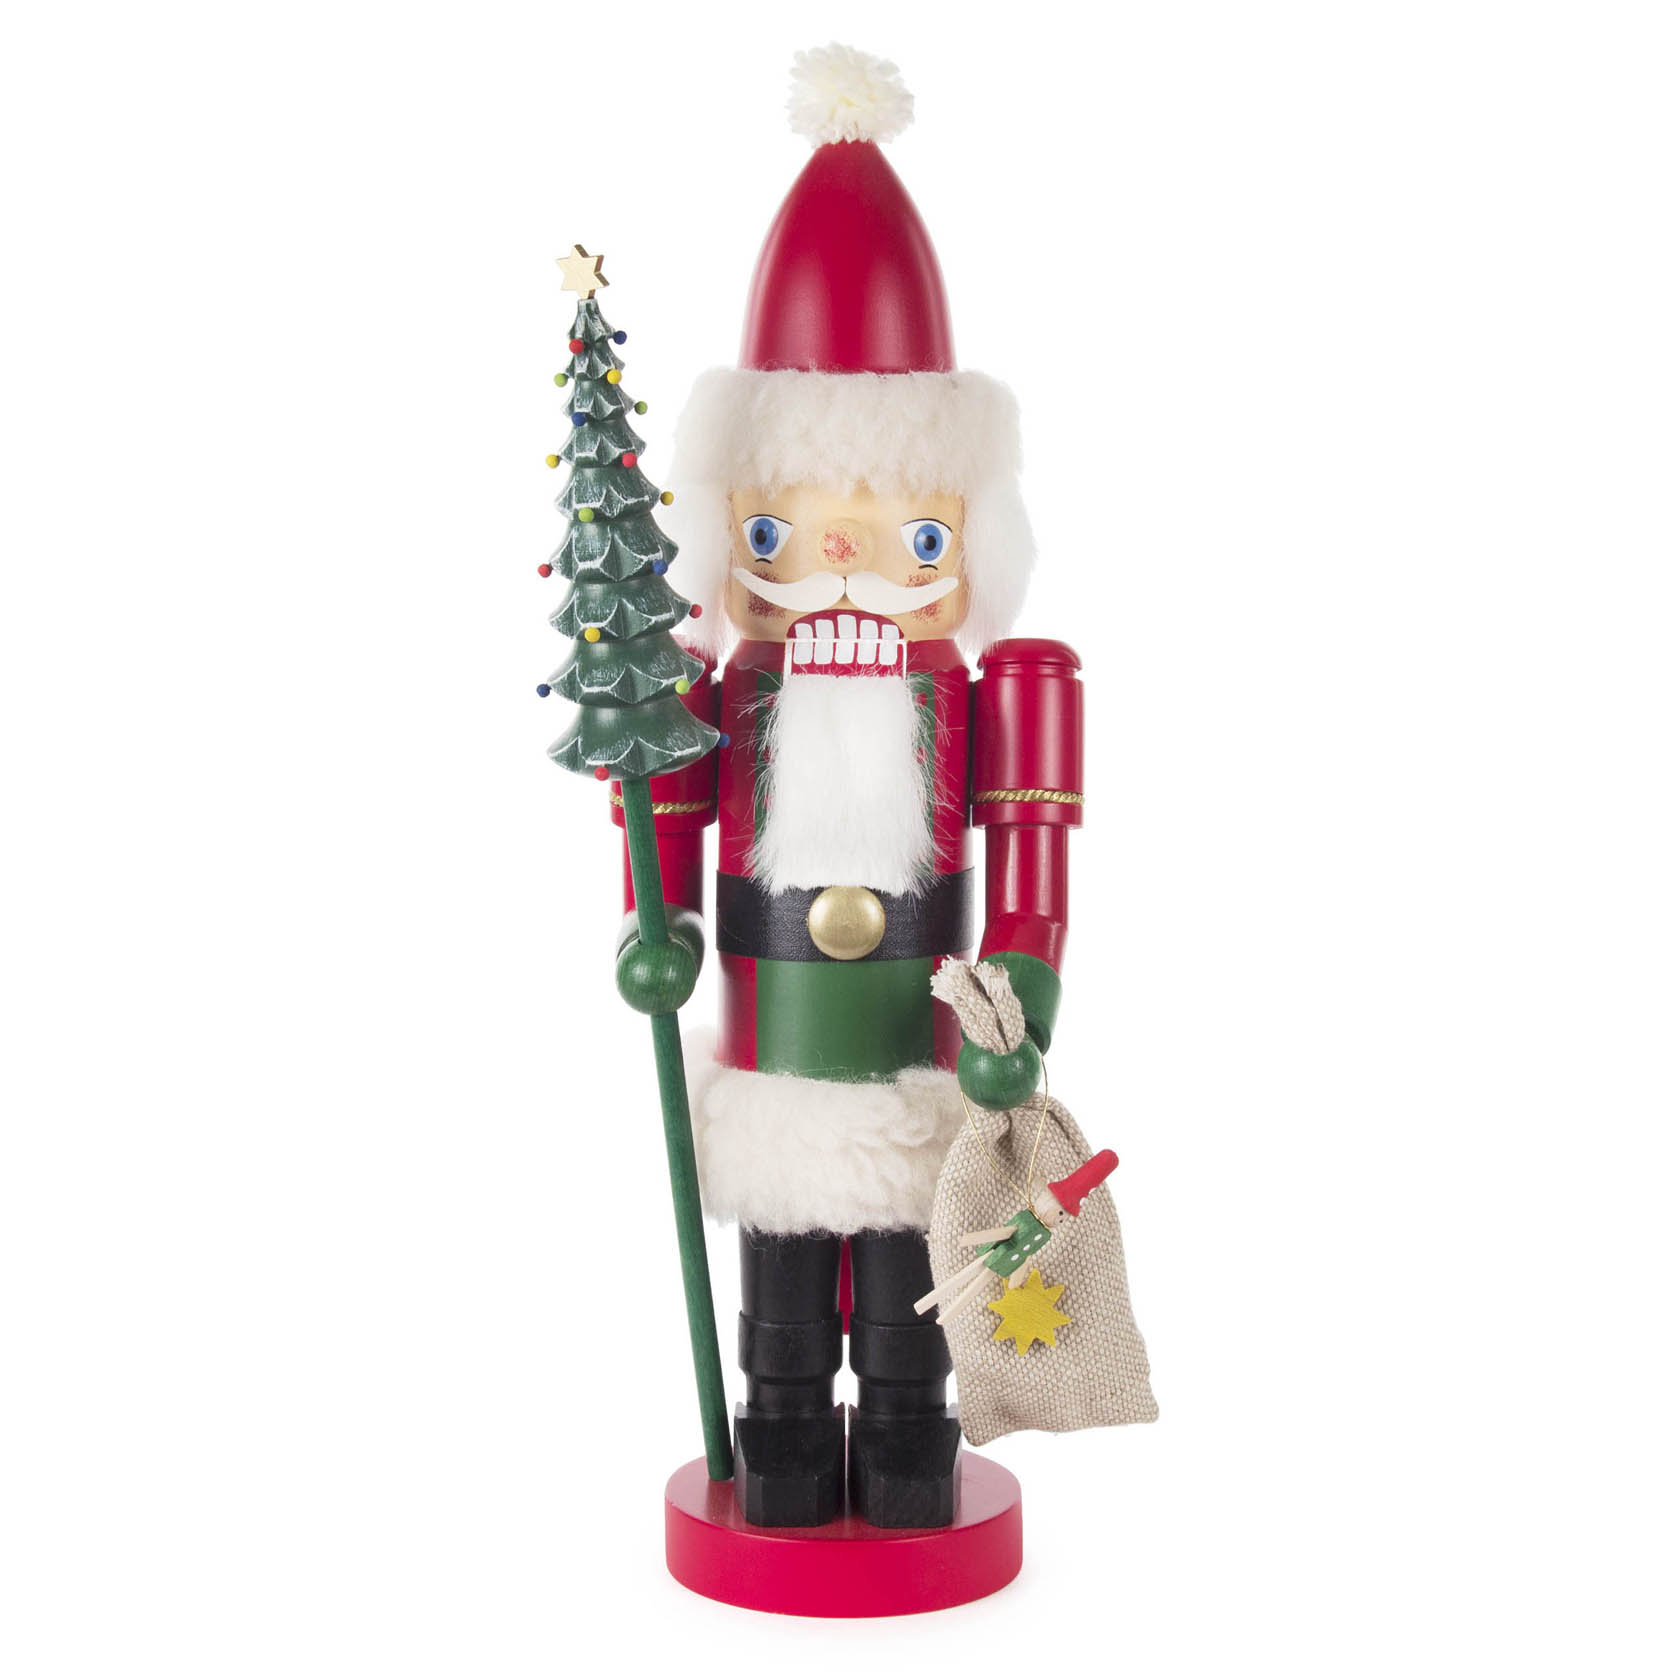 Nussknacker Weihnachtsmann, 35cm im Dregeno Online Shop günstig kaufen